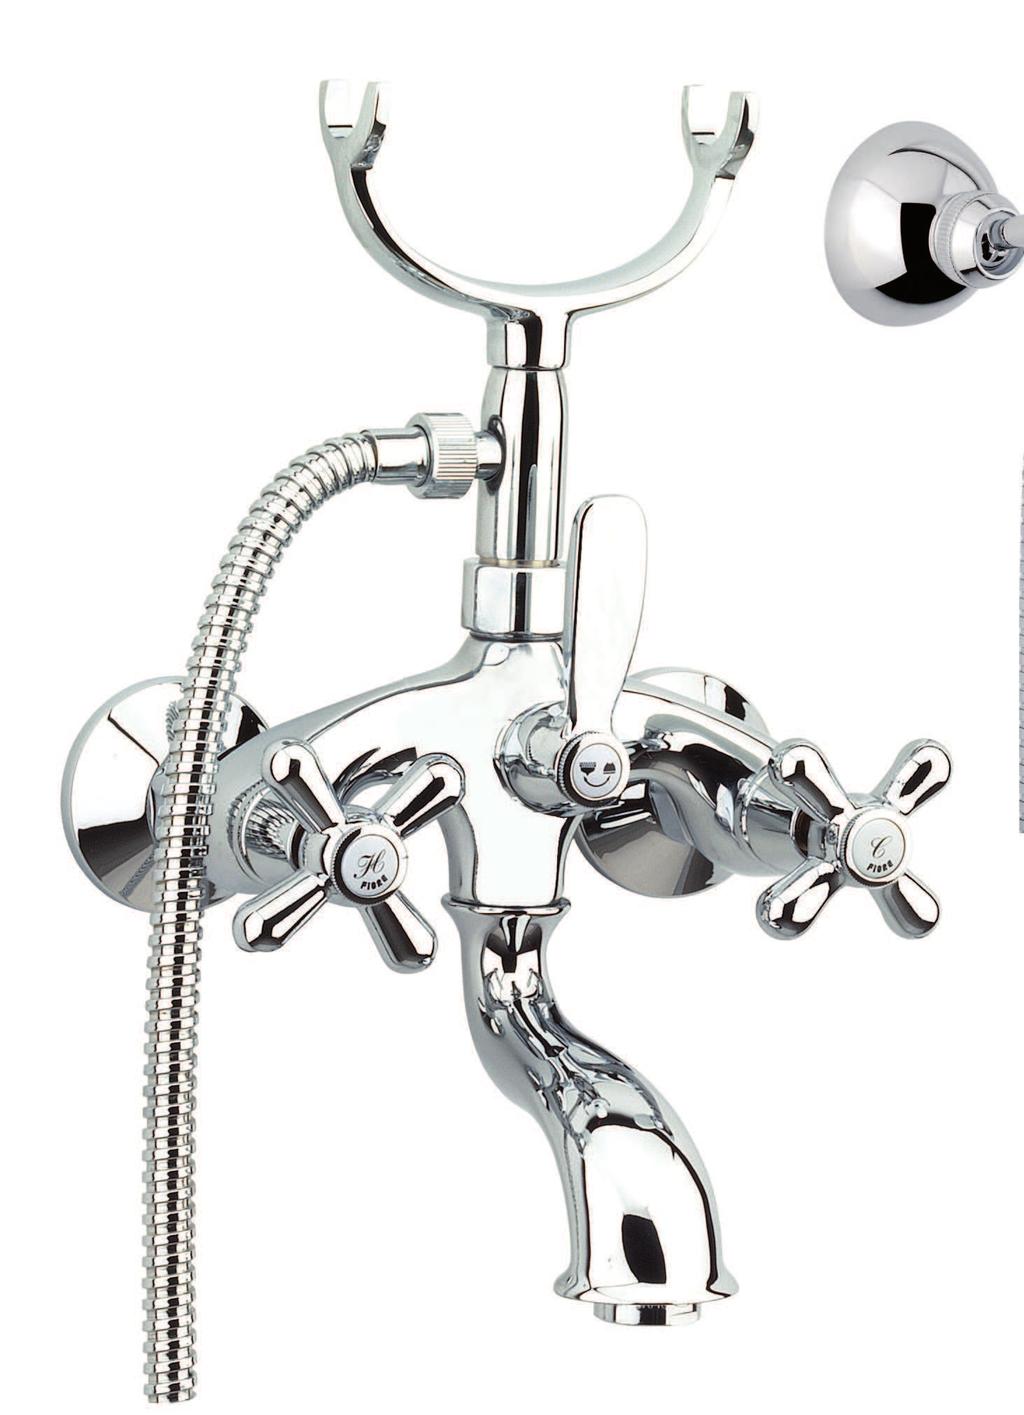 26 0610 00 Gruppo vasca esterno con flex e doccia retro External bath mixer with flex and old style shower Mélangeur bain